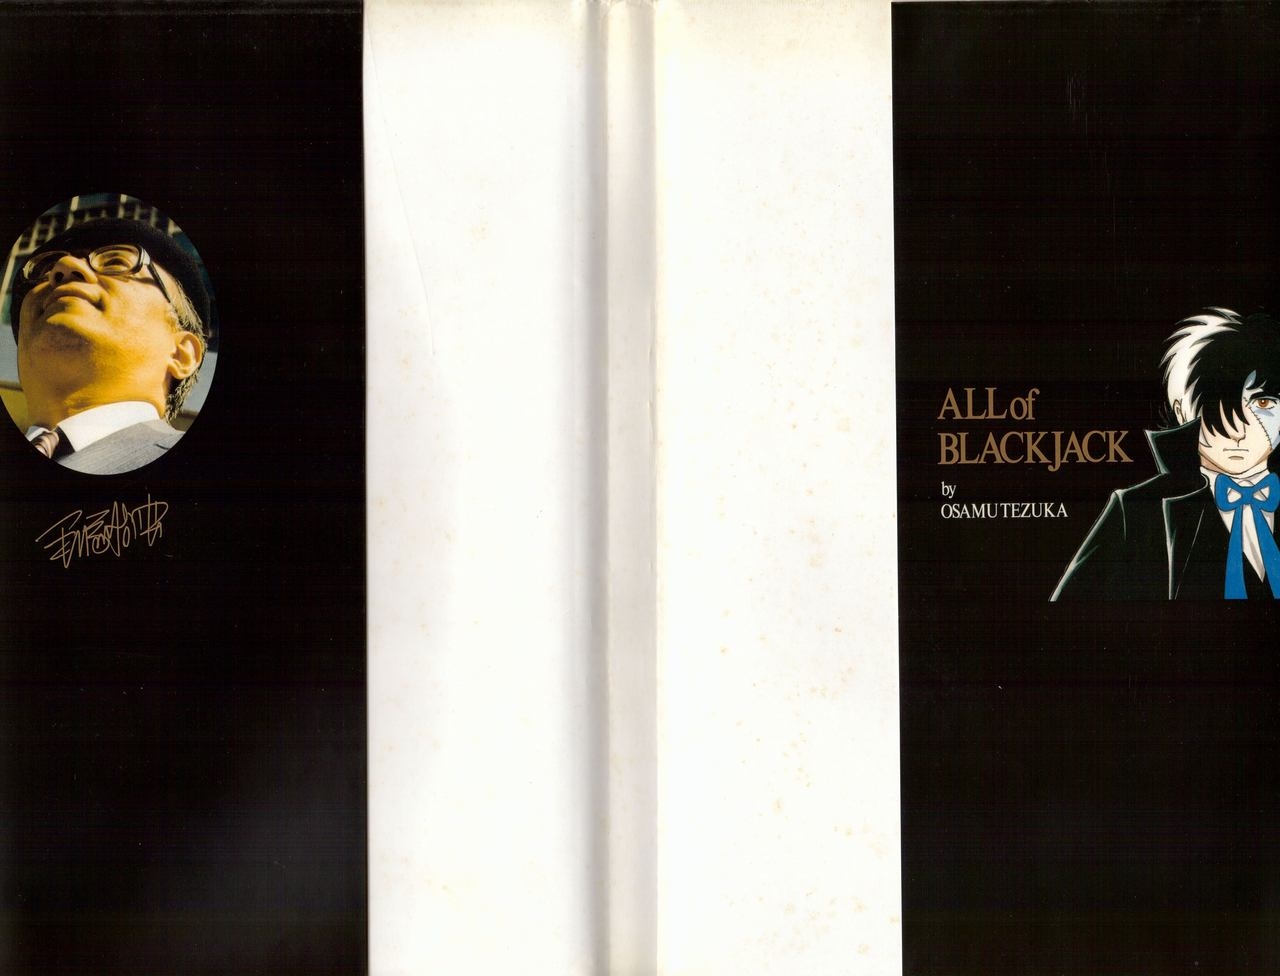 All of Black Jack By Osamu Tezuka 2